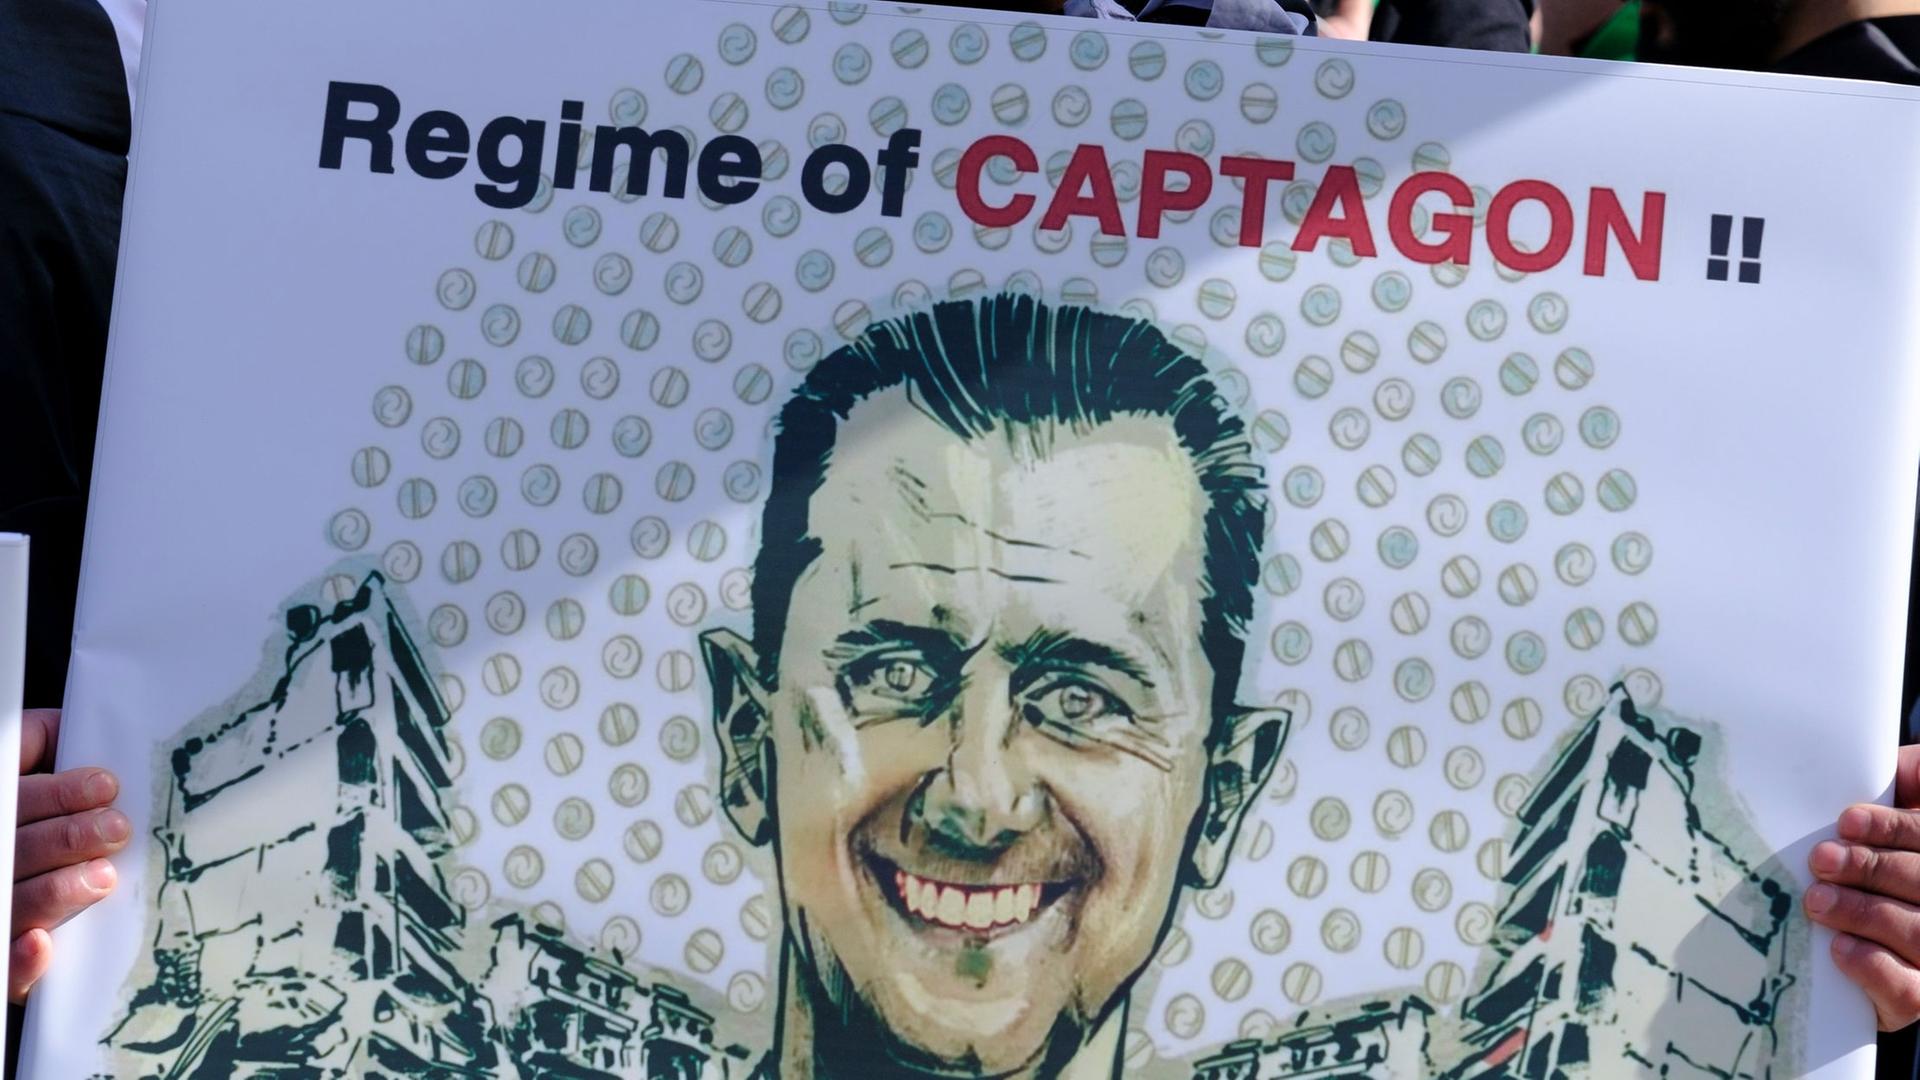 Ein Demonstrant hält ein Plakat mit dem Gesicht des syrischen Präsidenten Baschar al-Assad und der Aufschrift "Regime of Captagon".